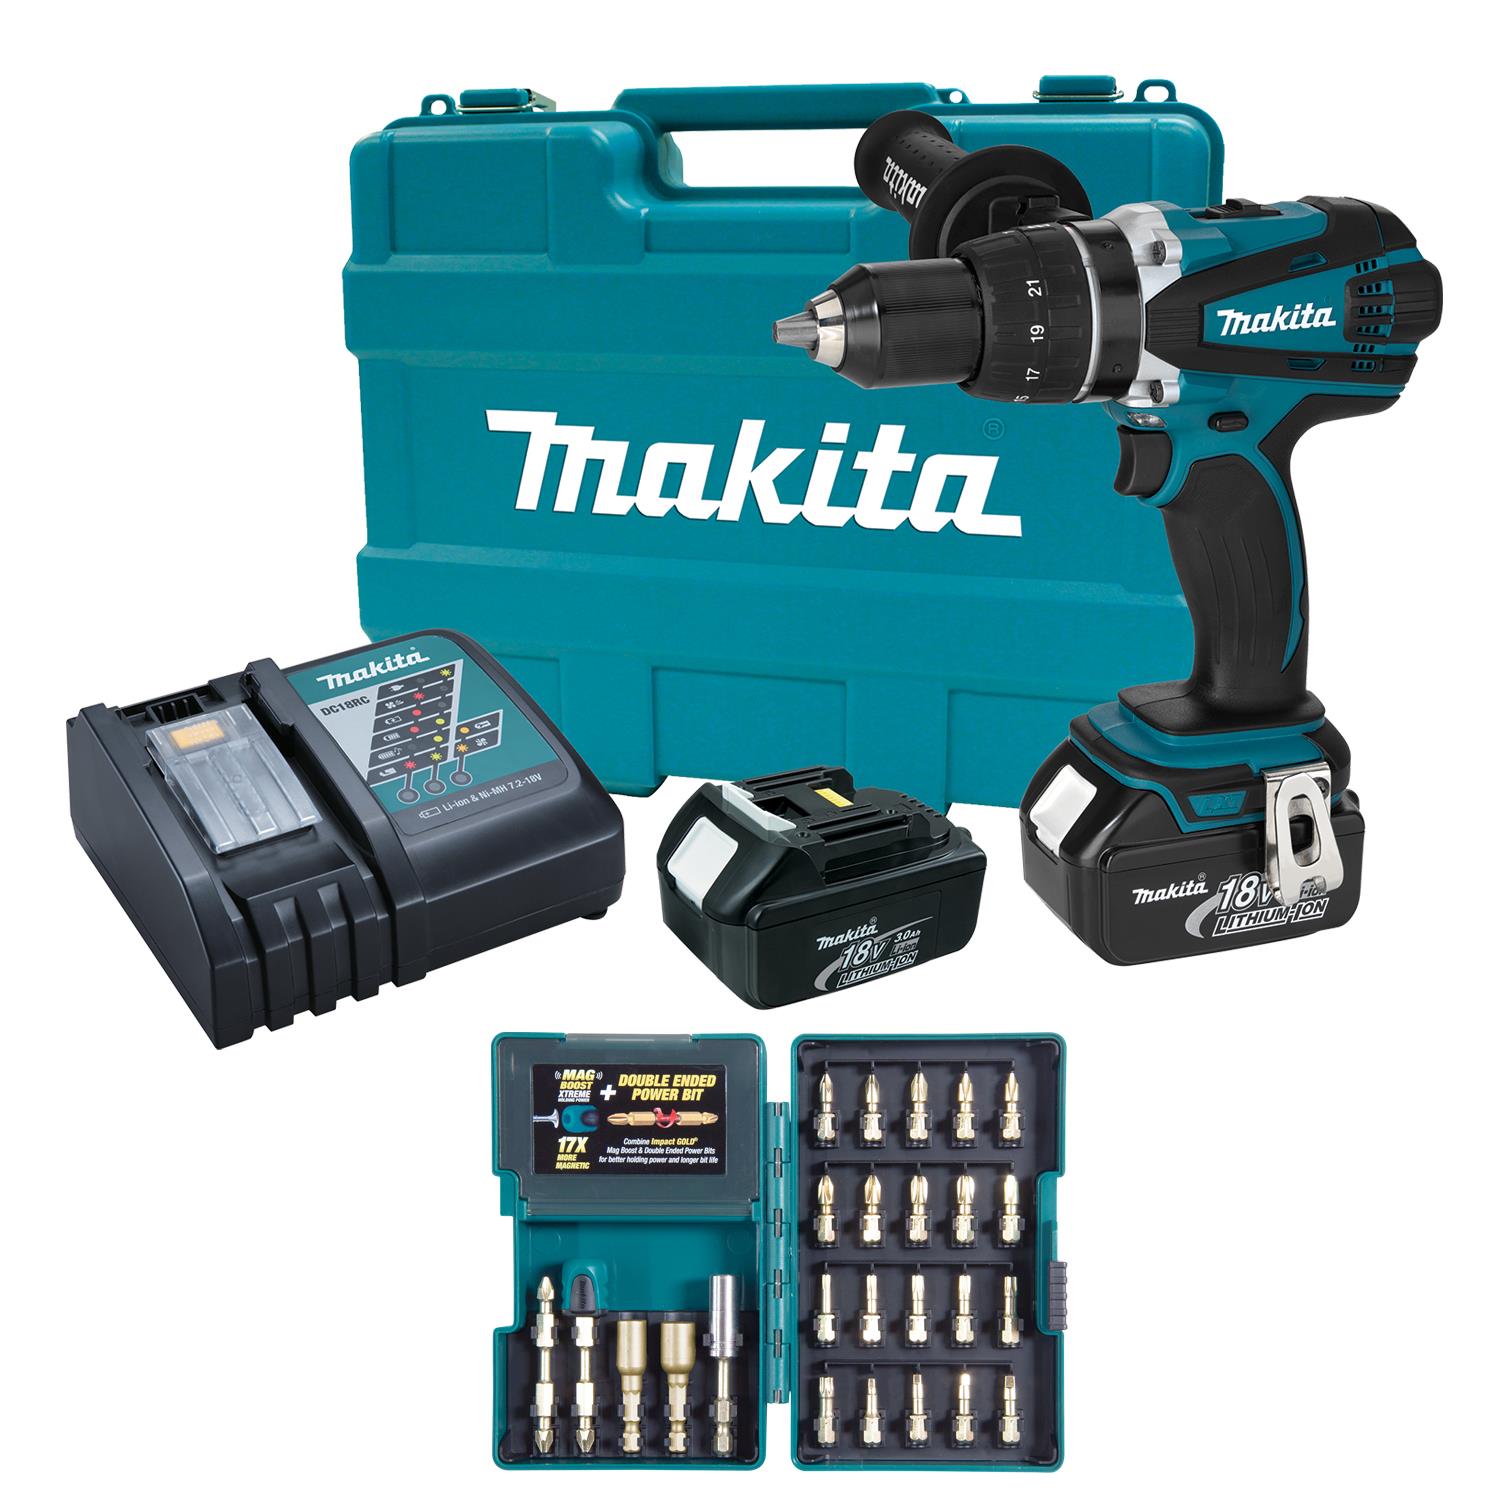 Makita 18V LXT Li-Ion 1/2" Driver-Drill Kit Set